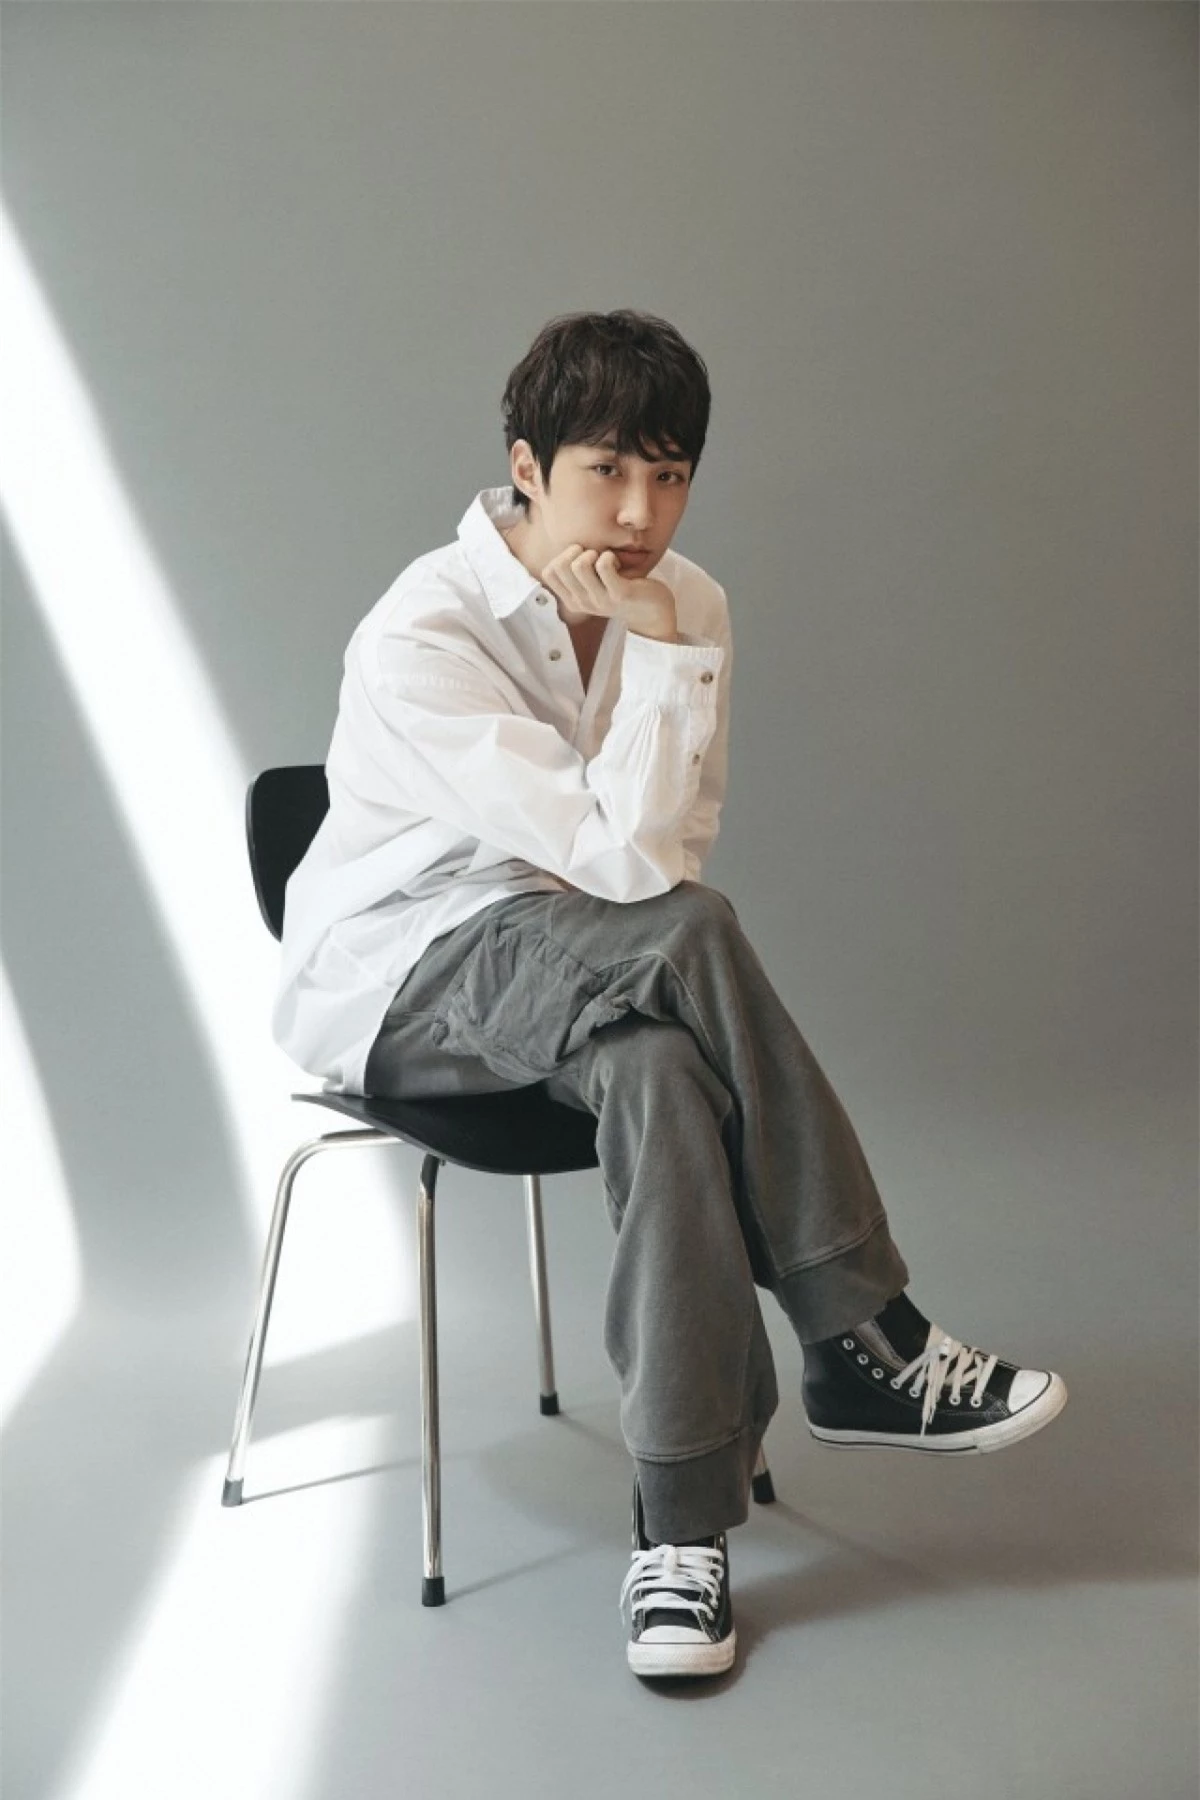 Không chỉ sở hữu ngoại hình đẹp, Lee Chung Hyun còn là một trong những đạo diễn trẻ được đánh giá cao.